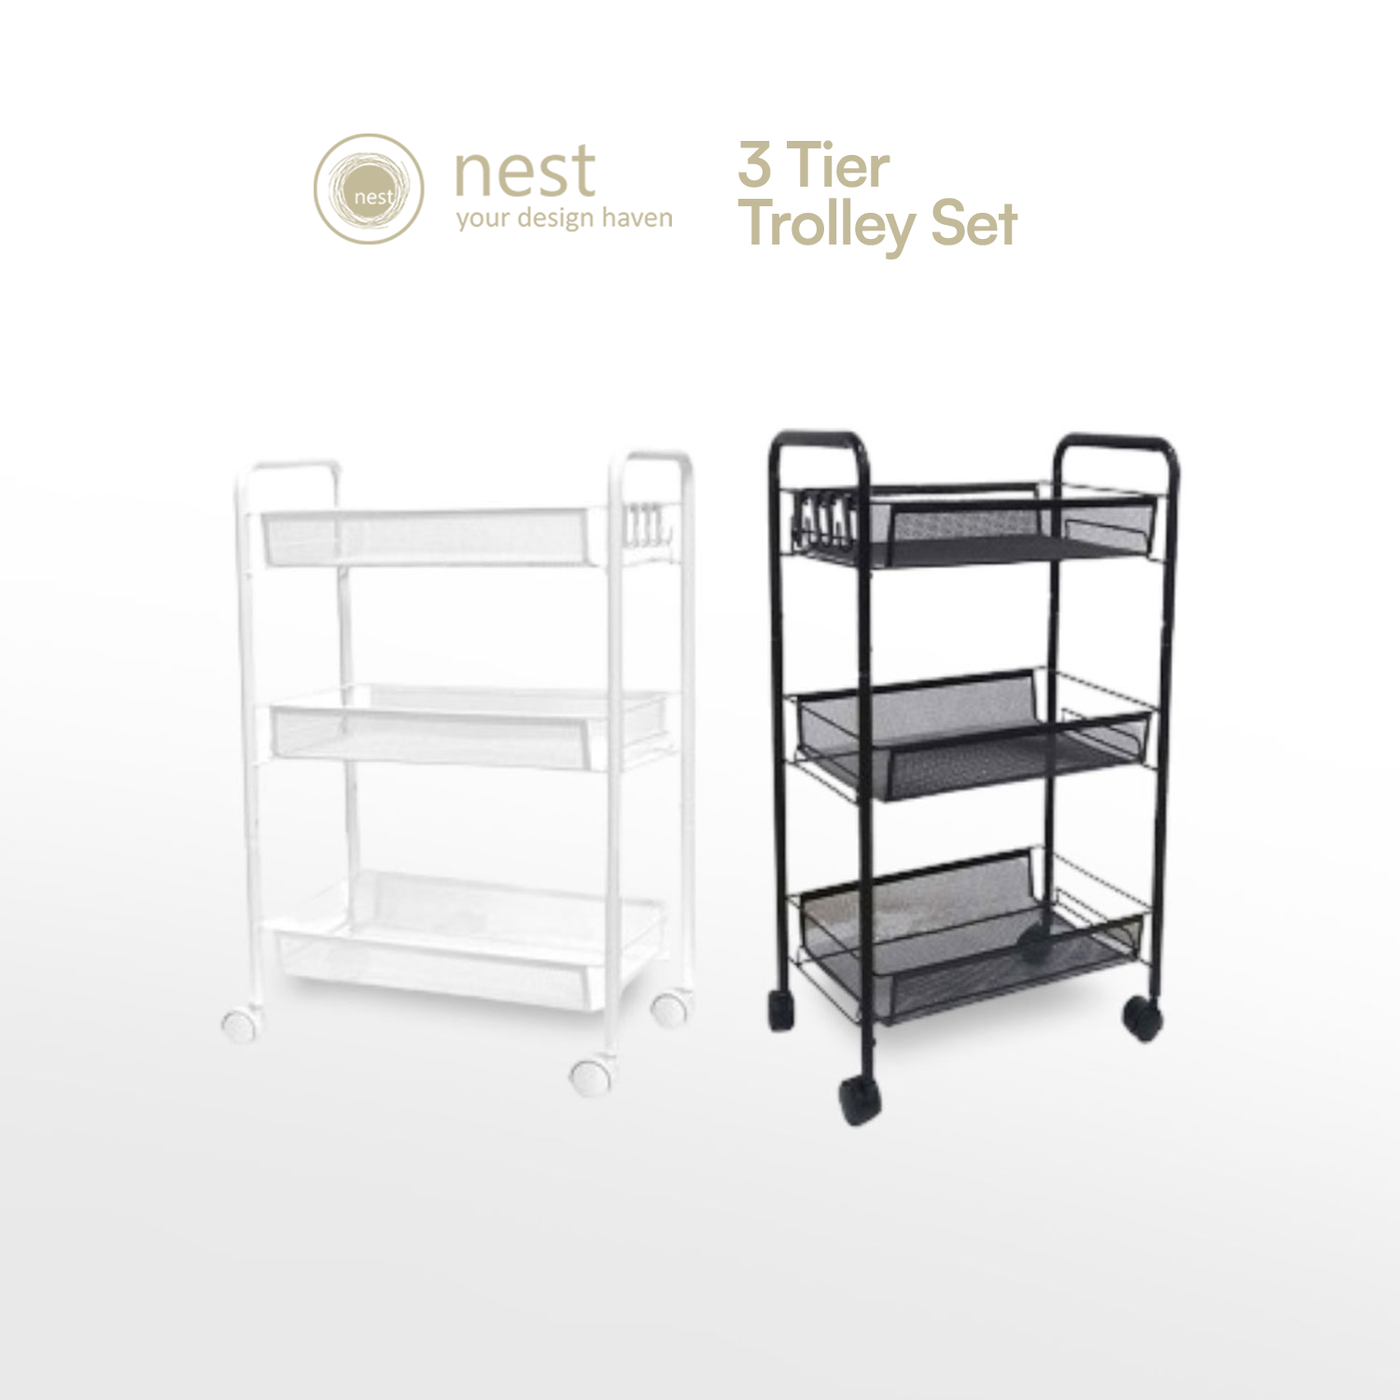 Nest Design Lab Premium Kitchen Storage Trolley Cart Set of 2